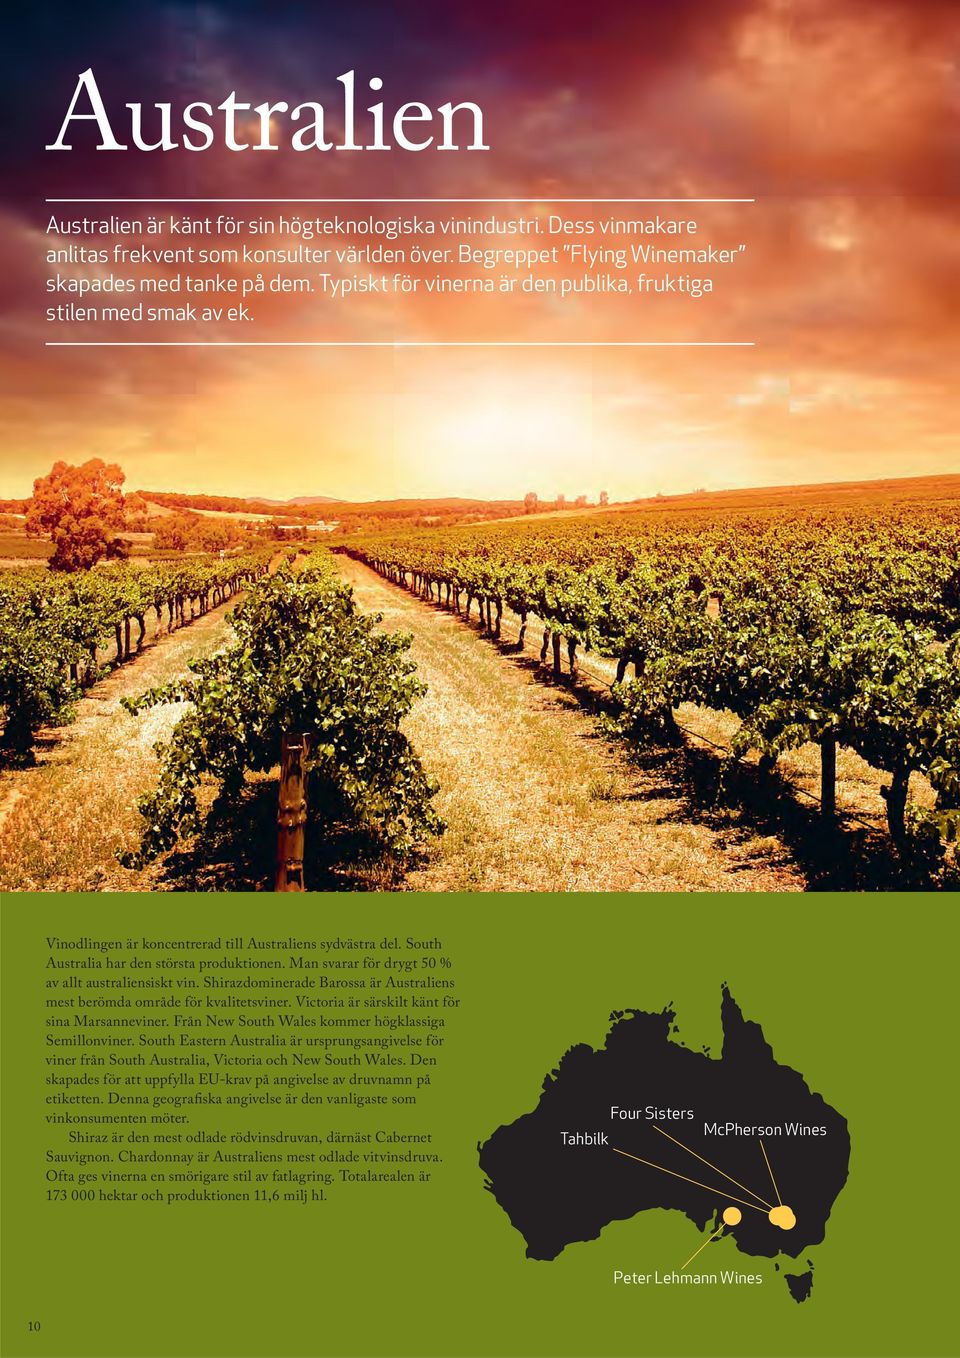 Man svarar för drygt 50 % av allt australiensiskt vin. Shirazdominerade Barossa är Australiens mest berömda område för kvalitetsviner. Victoria är särskilt känt för sina Marsanneviner.